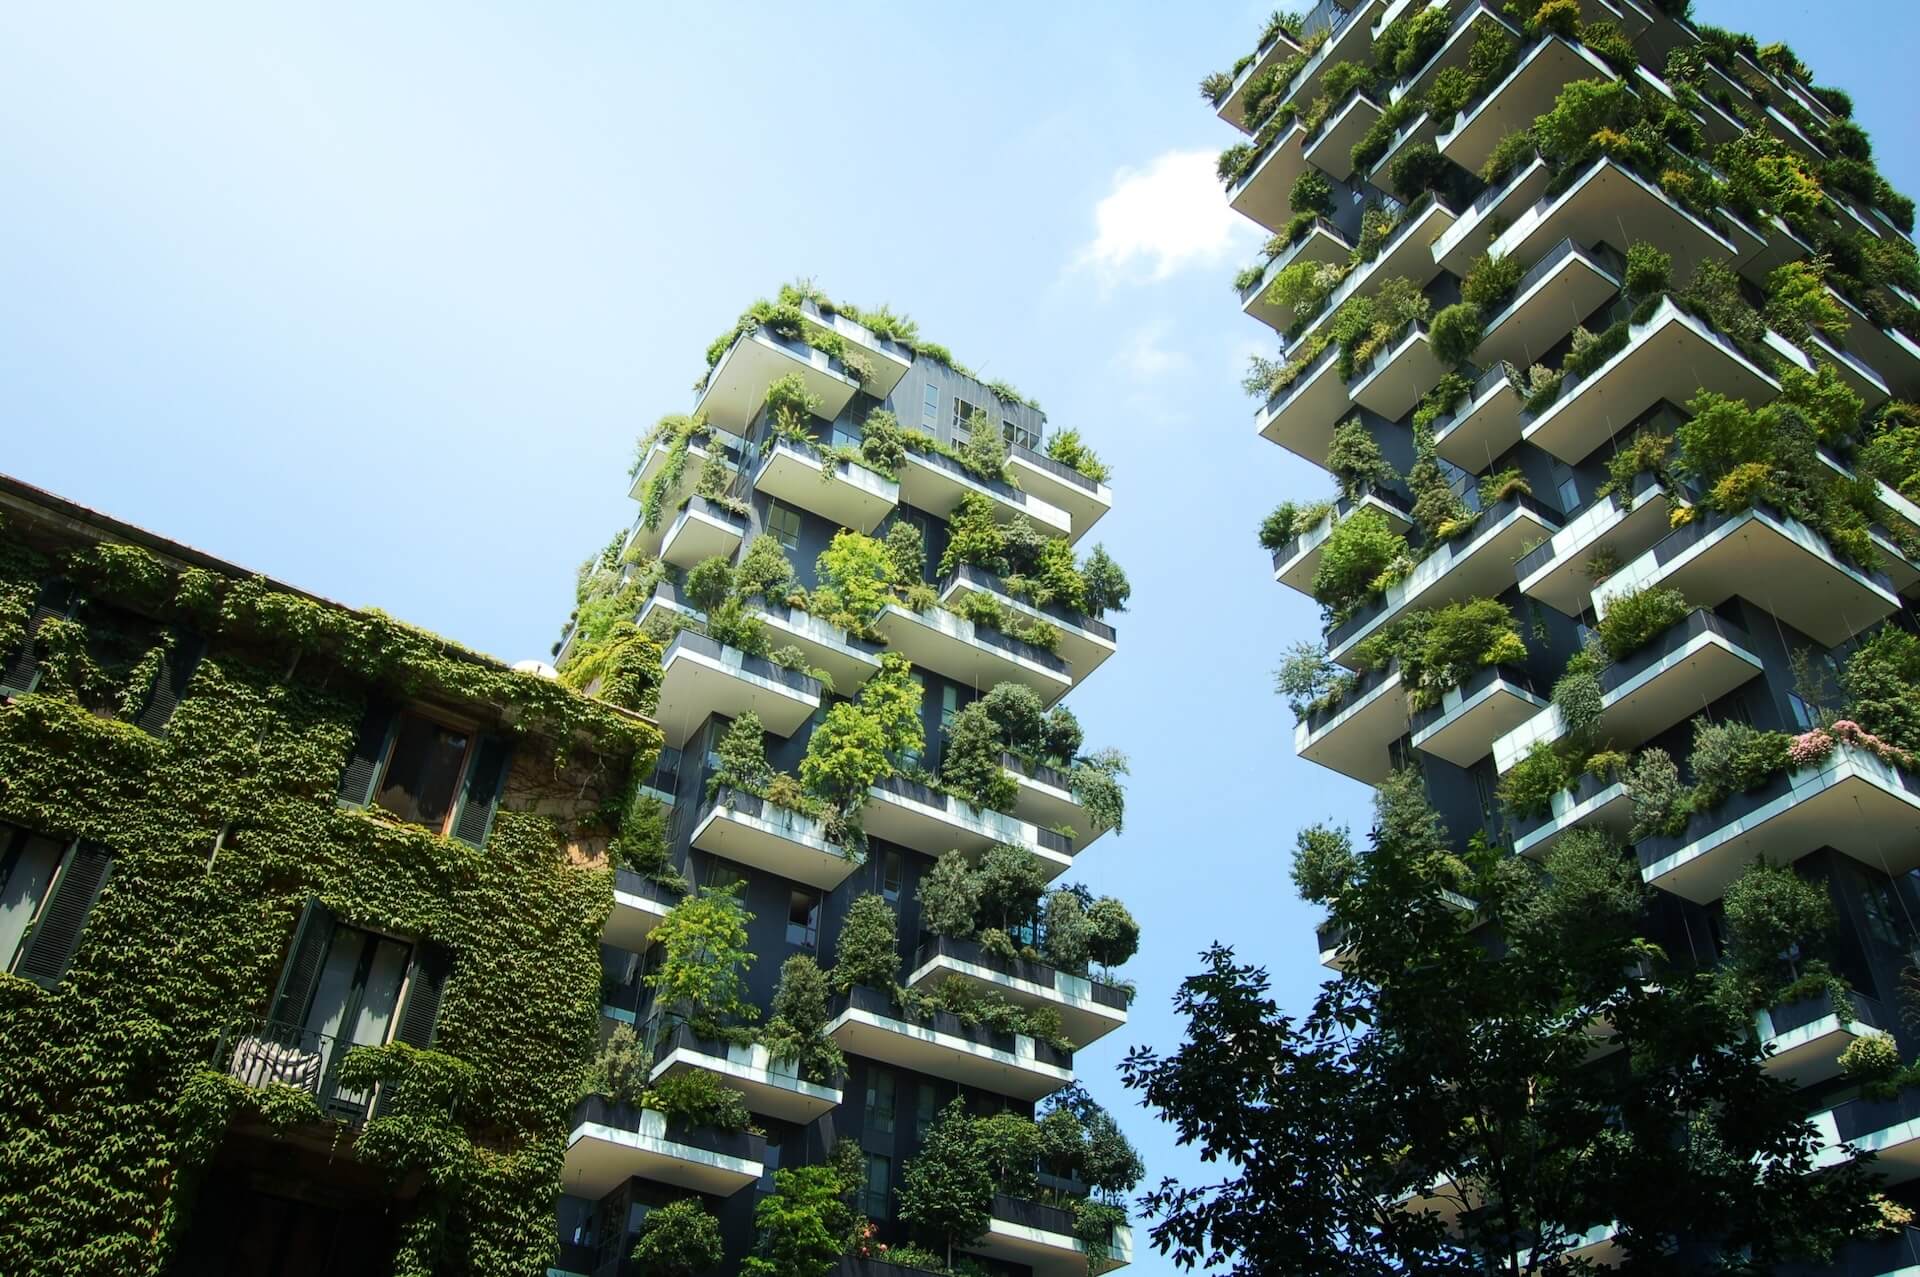 urges urban regeneration architecture and sustainability green economy